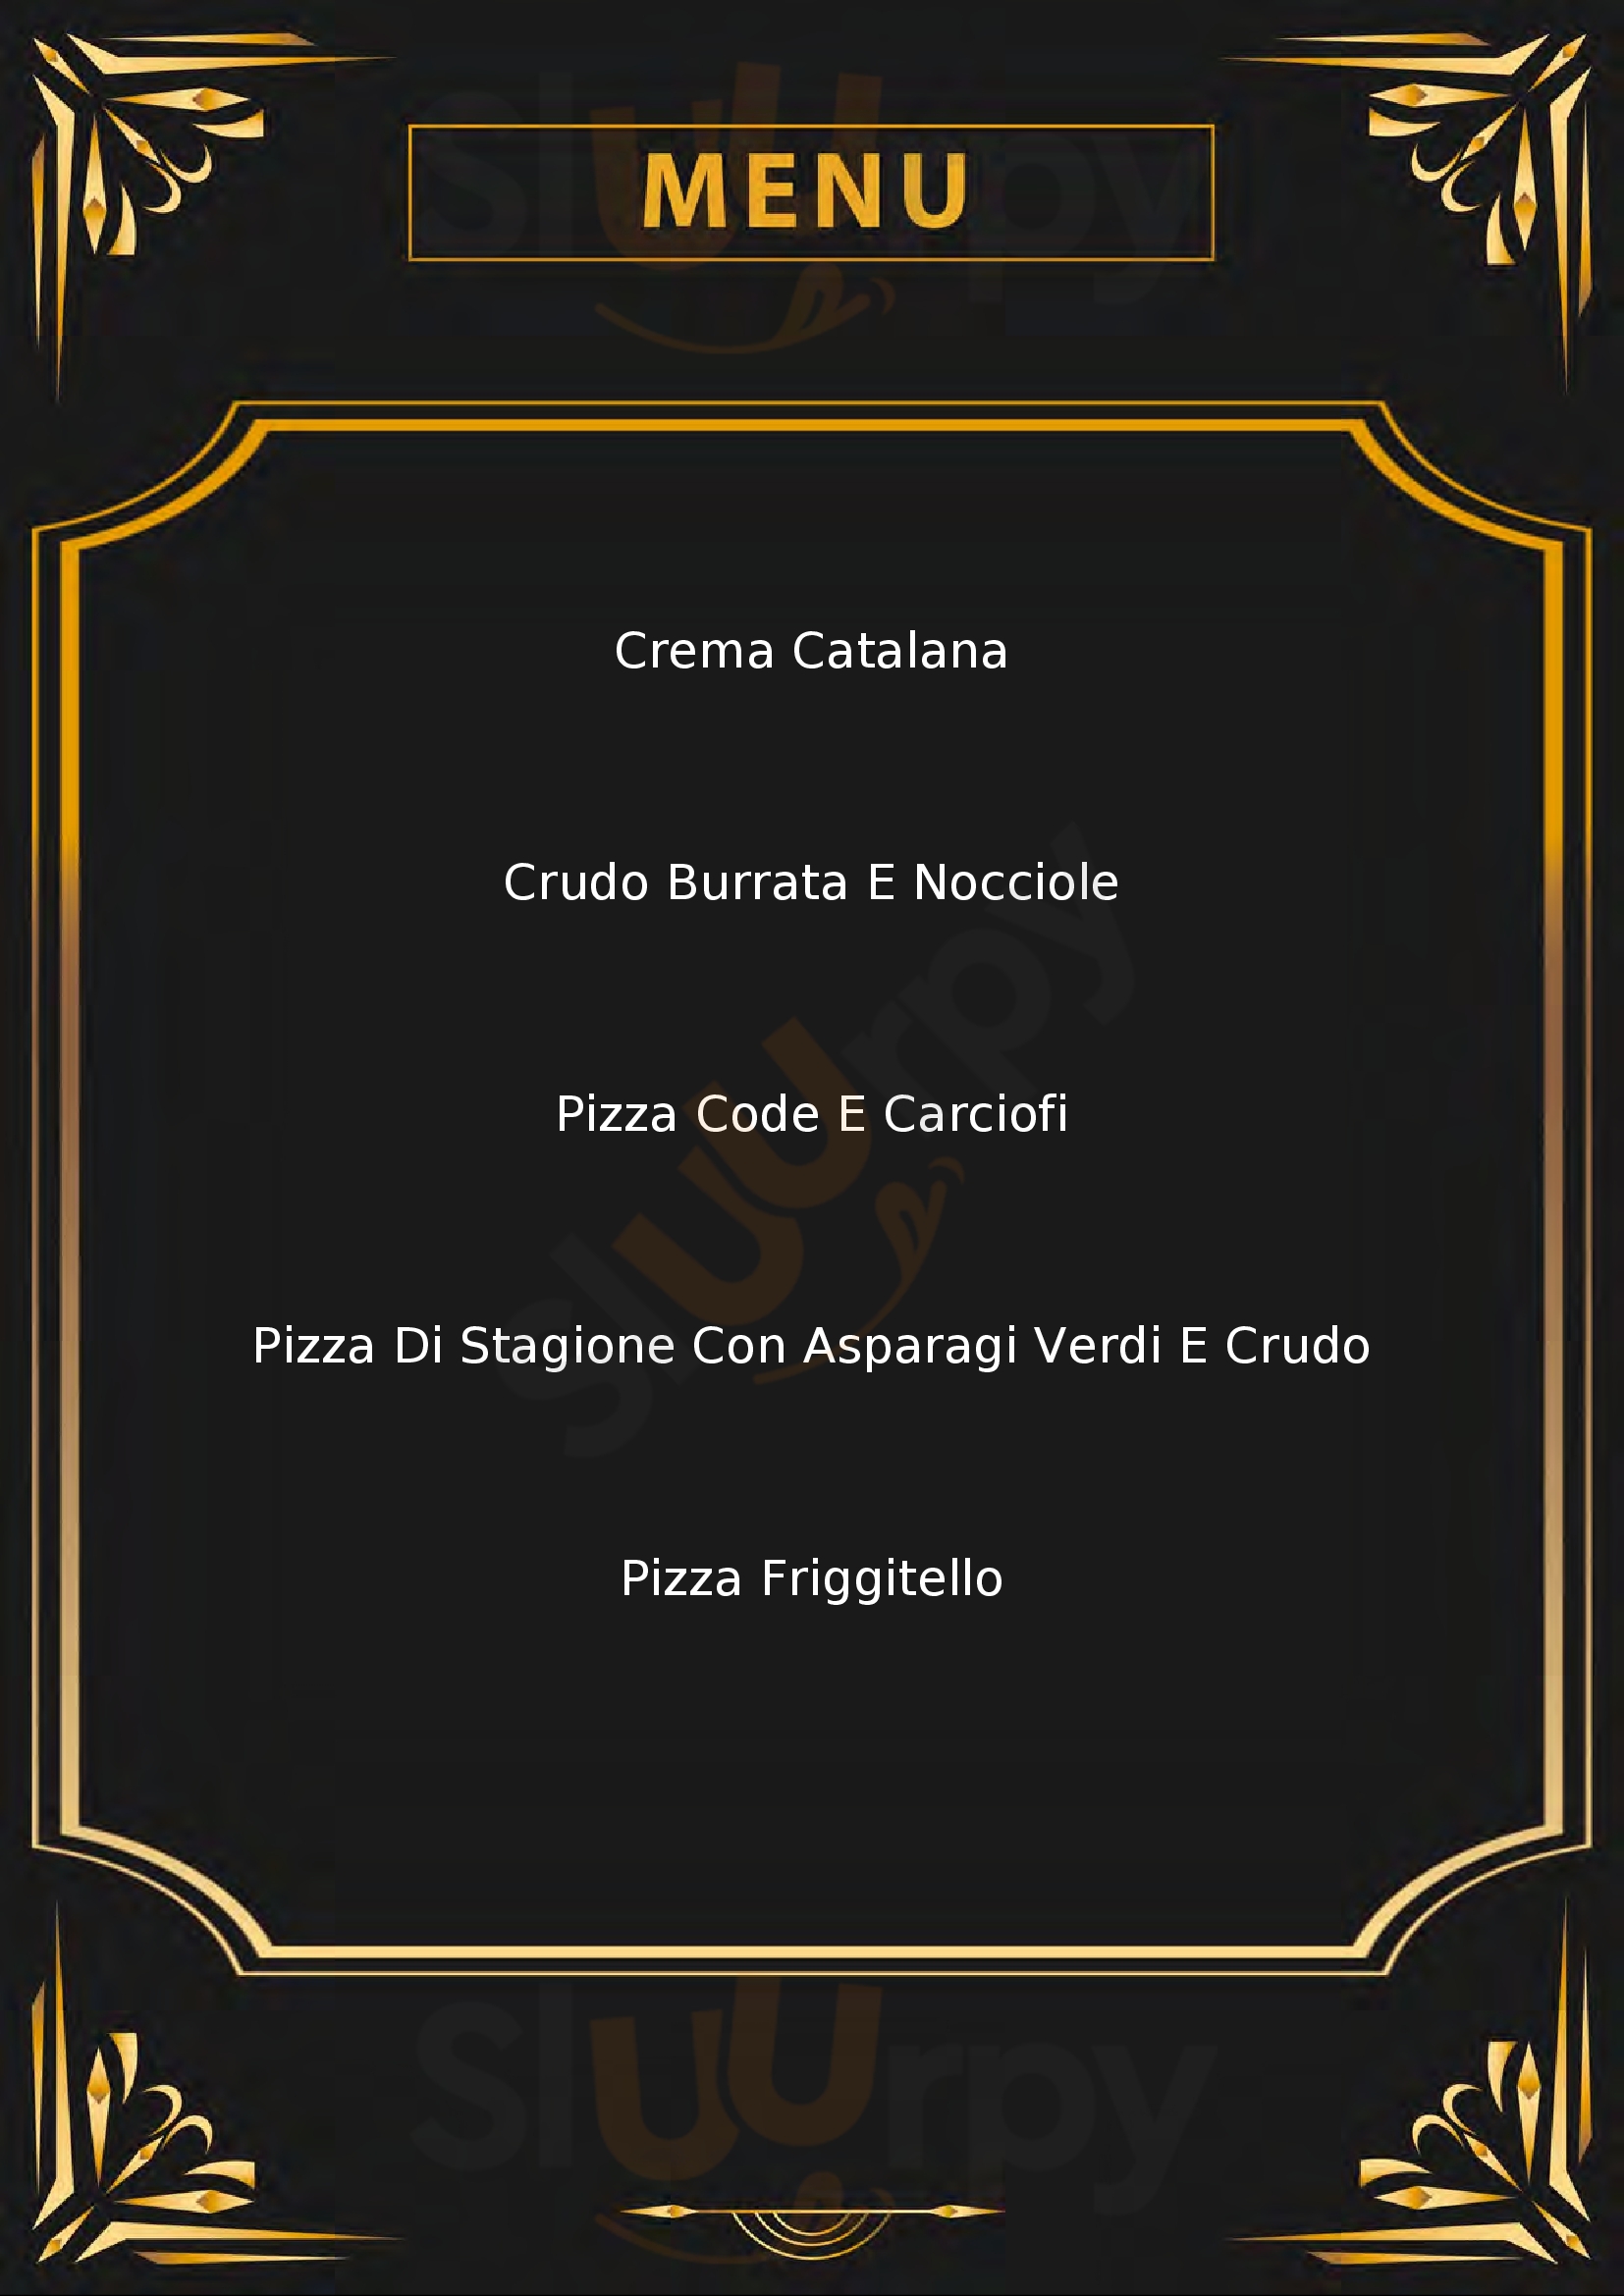 BRAMA fame di pizza Castello Di Godego menù 1 pagina